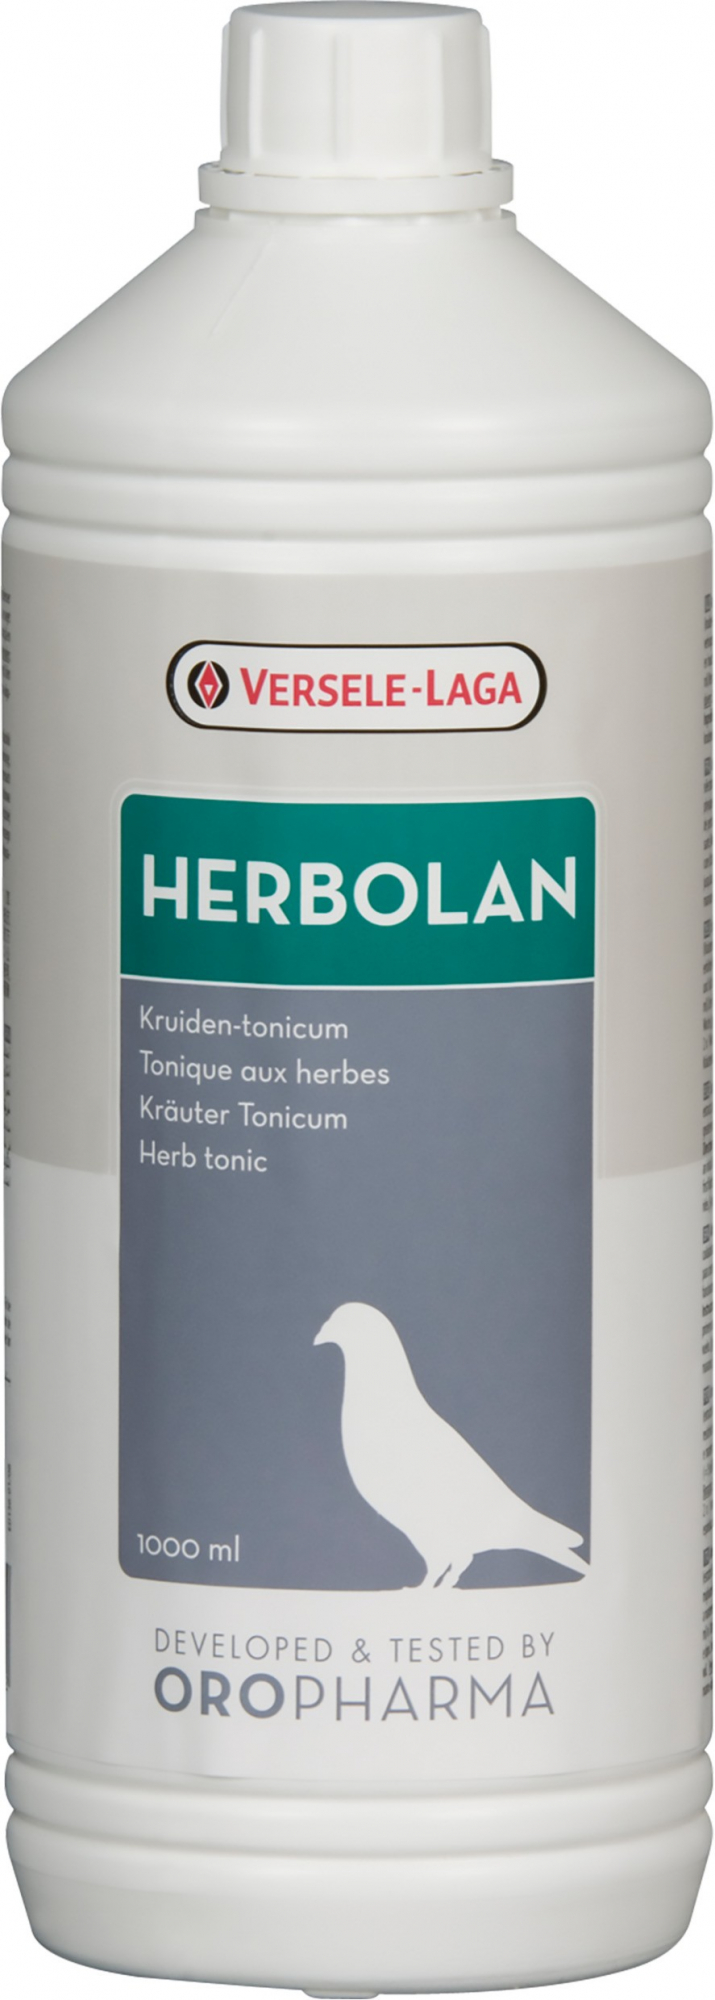 Oropharma Herbolan infuso alle erbe, condizione fisica e resistenza